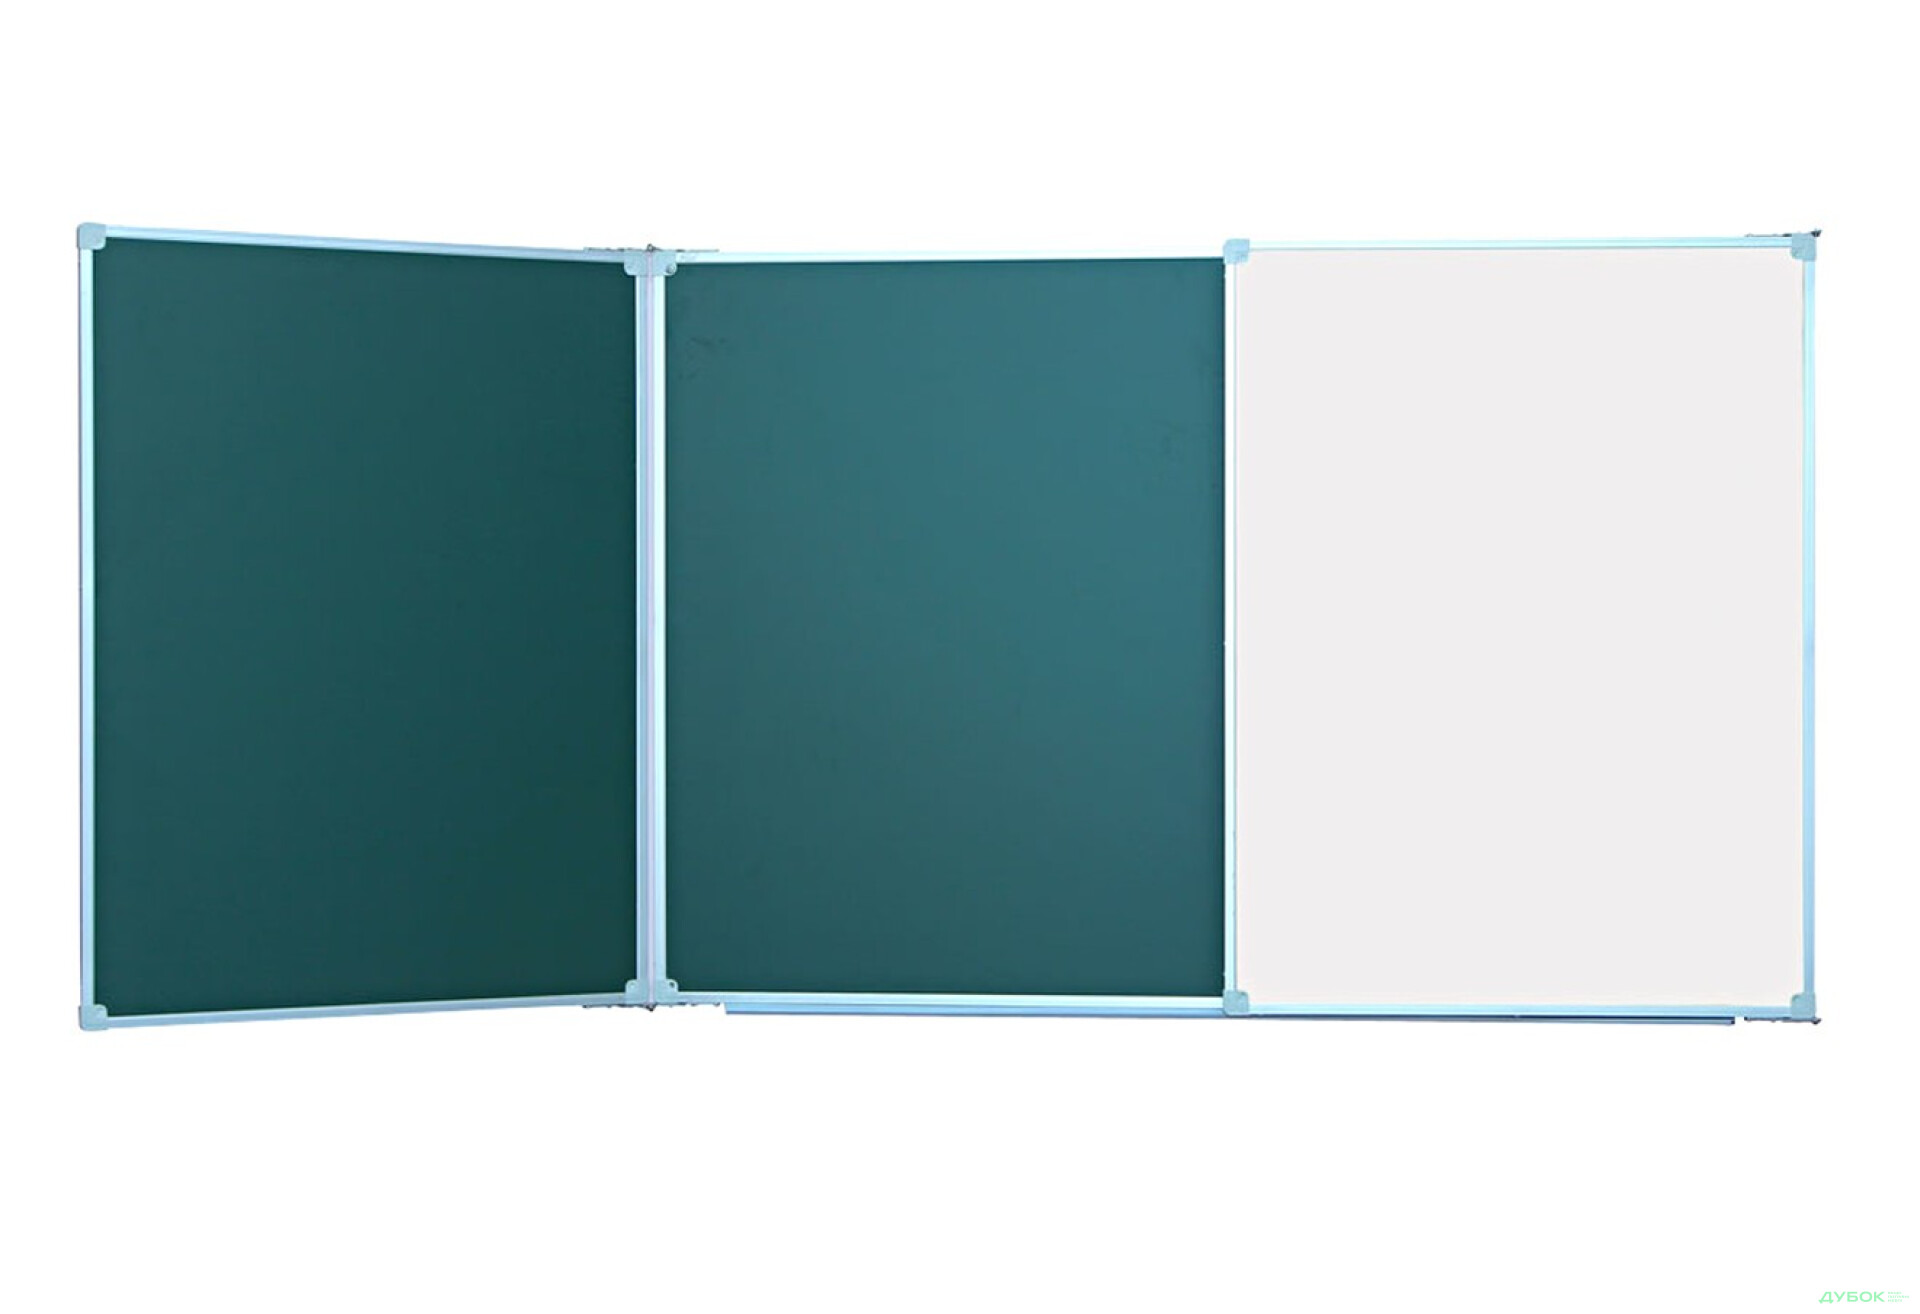 Фото 1 - Доска аудиторная 3-х створчатая 3х1м комб. (зелёная+белая), арт. 33918МБ Гелика